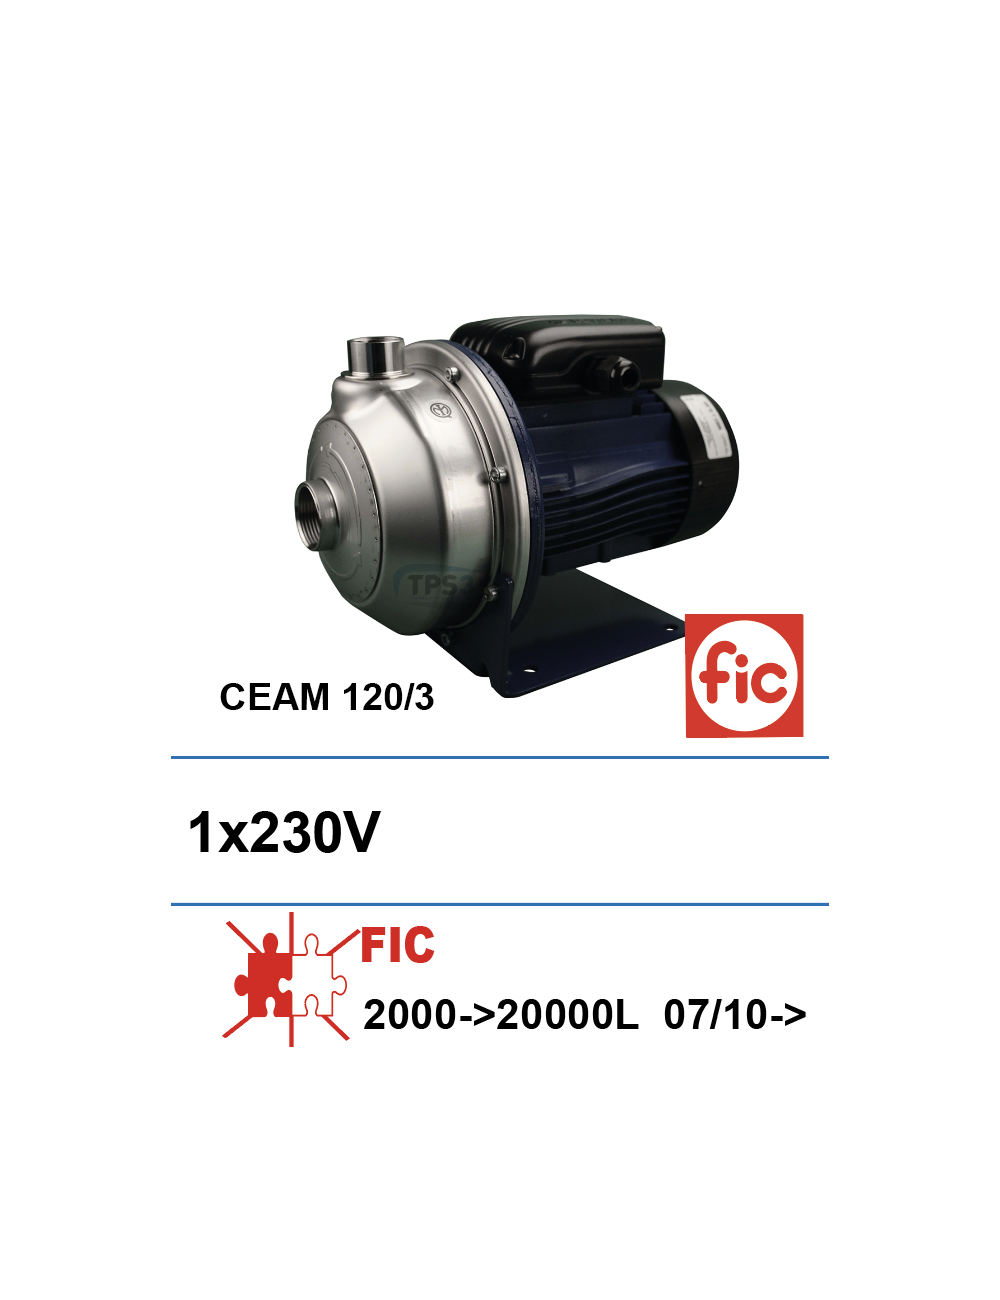 Pompe de lavage FIC CEAM 120/3 1x230V -07/10 2000-5000L